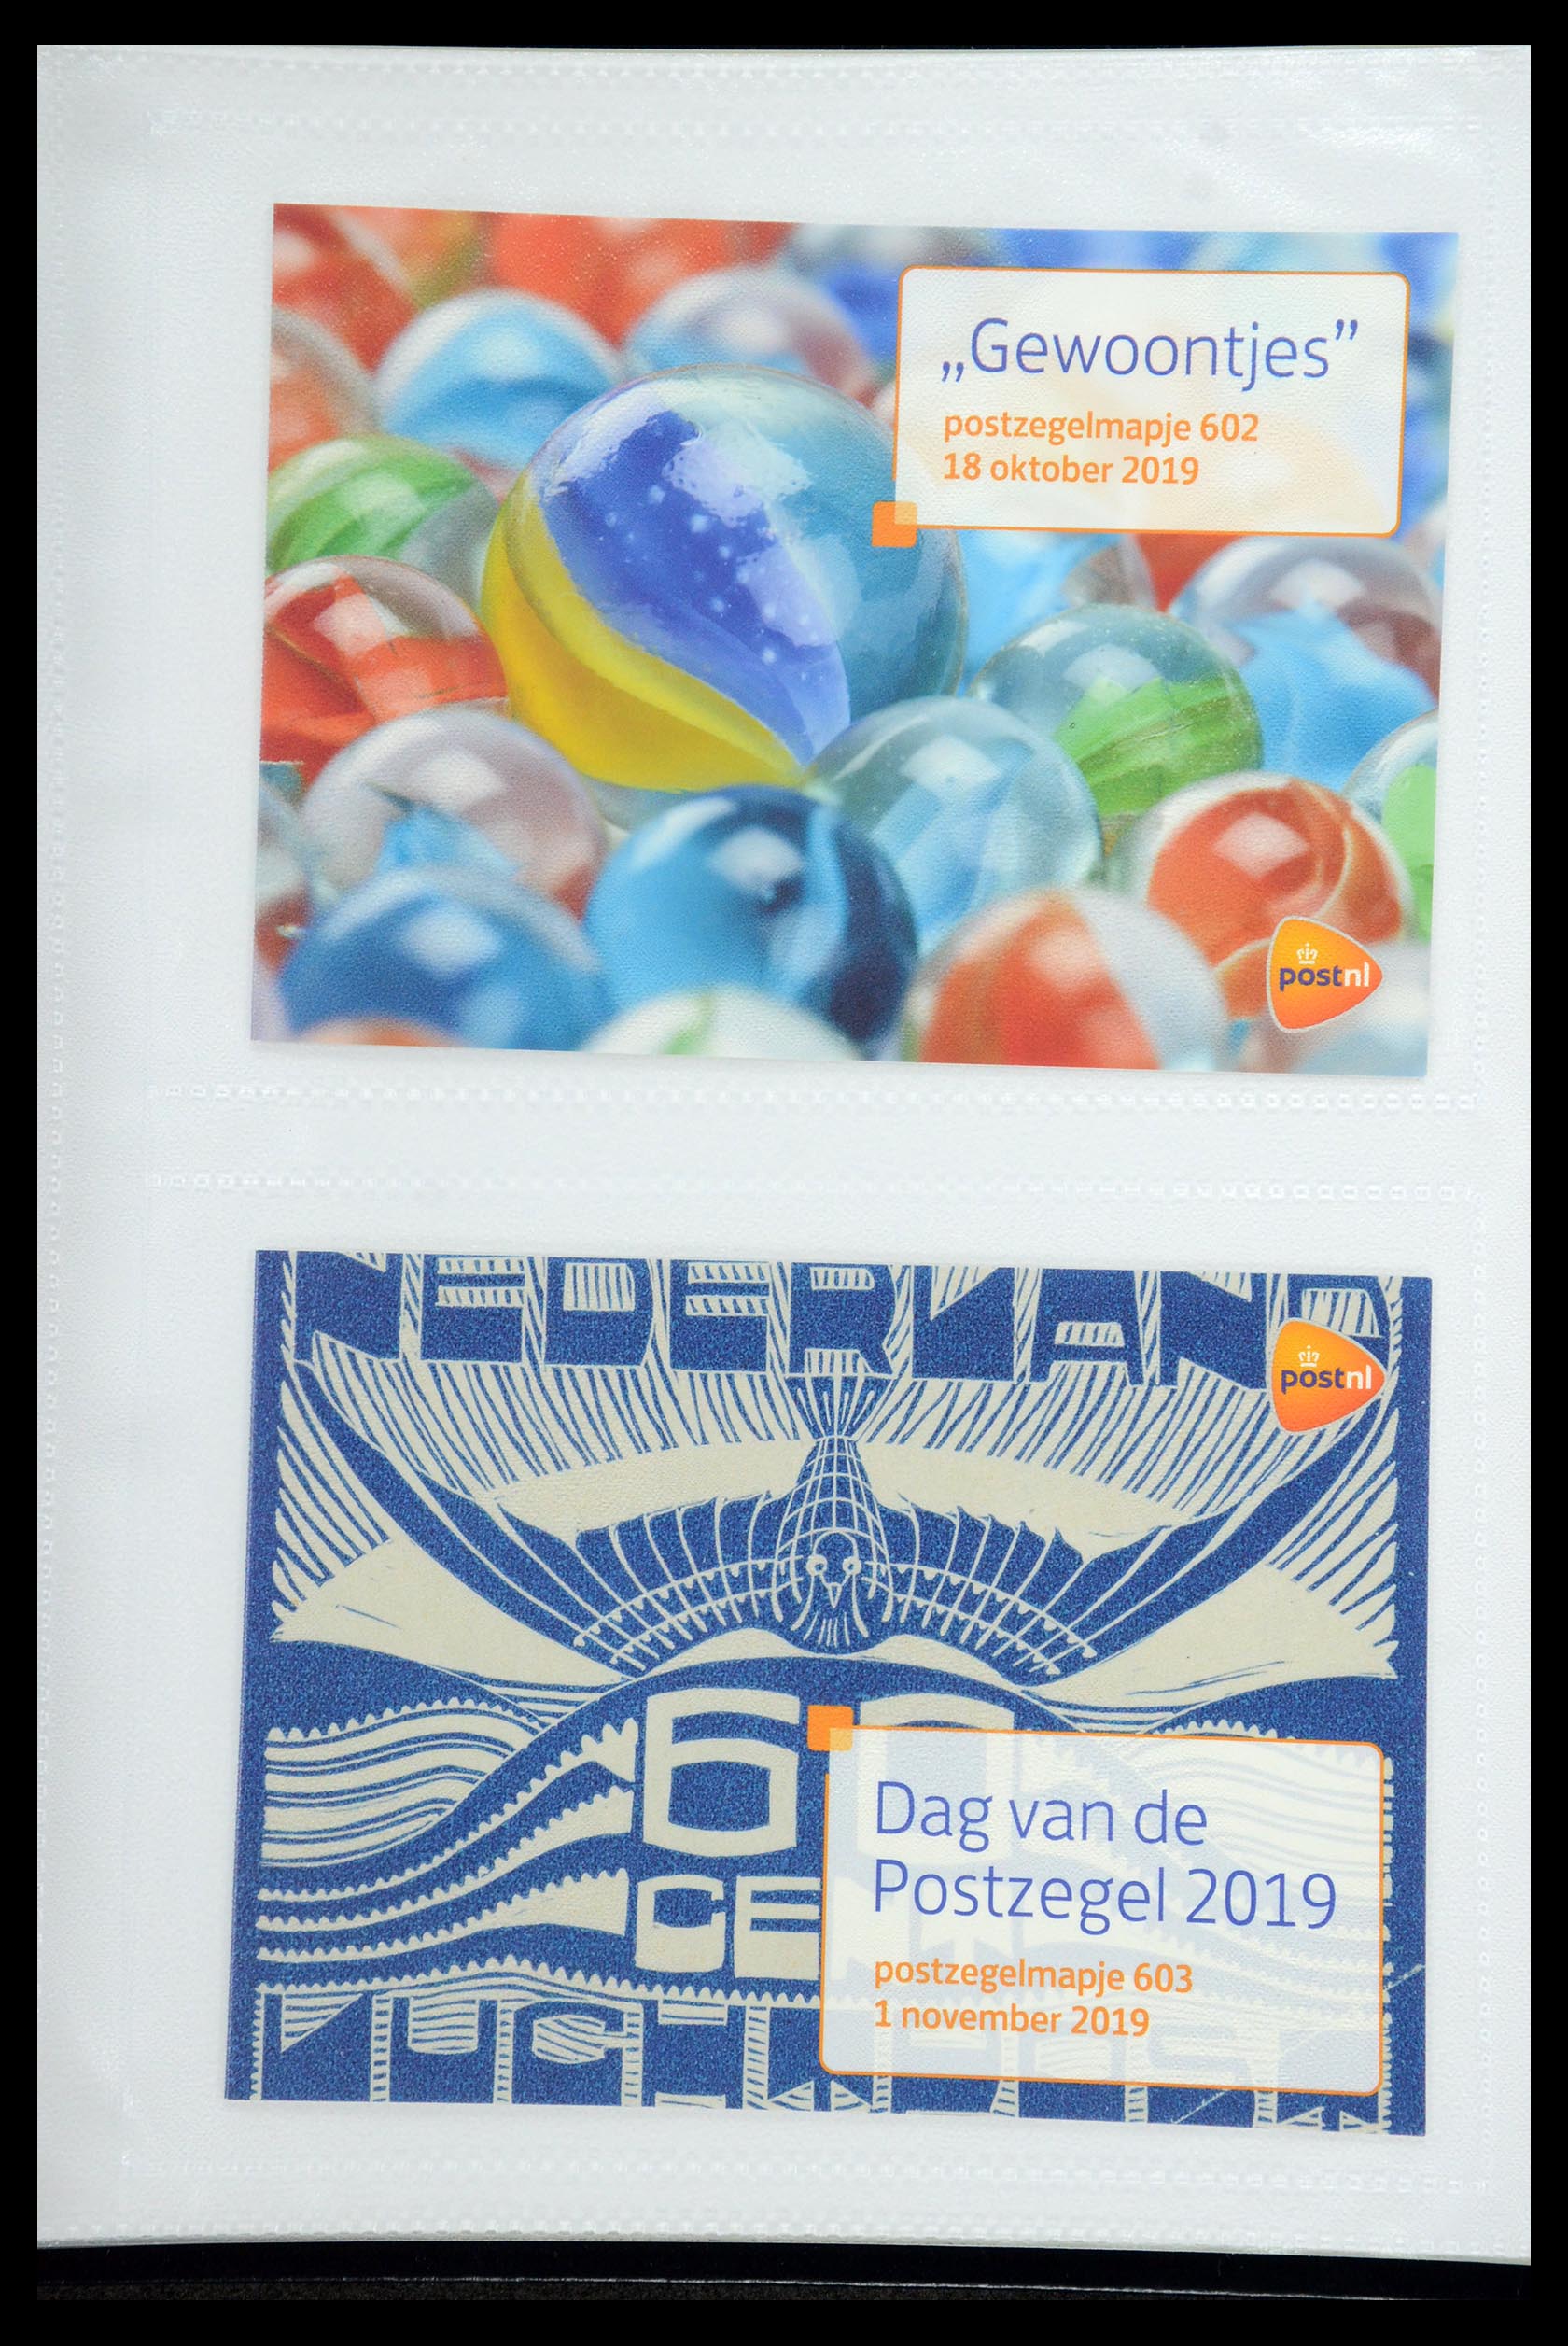 35947 364 - Stamp Collection 35947 Netherlands PTT presentation packs 1982-2019!